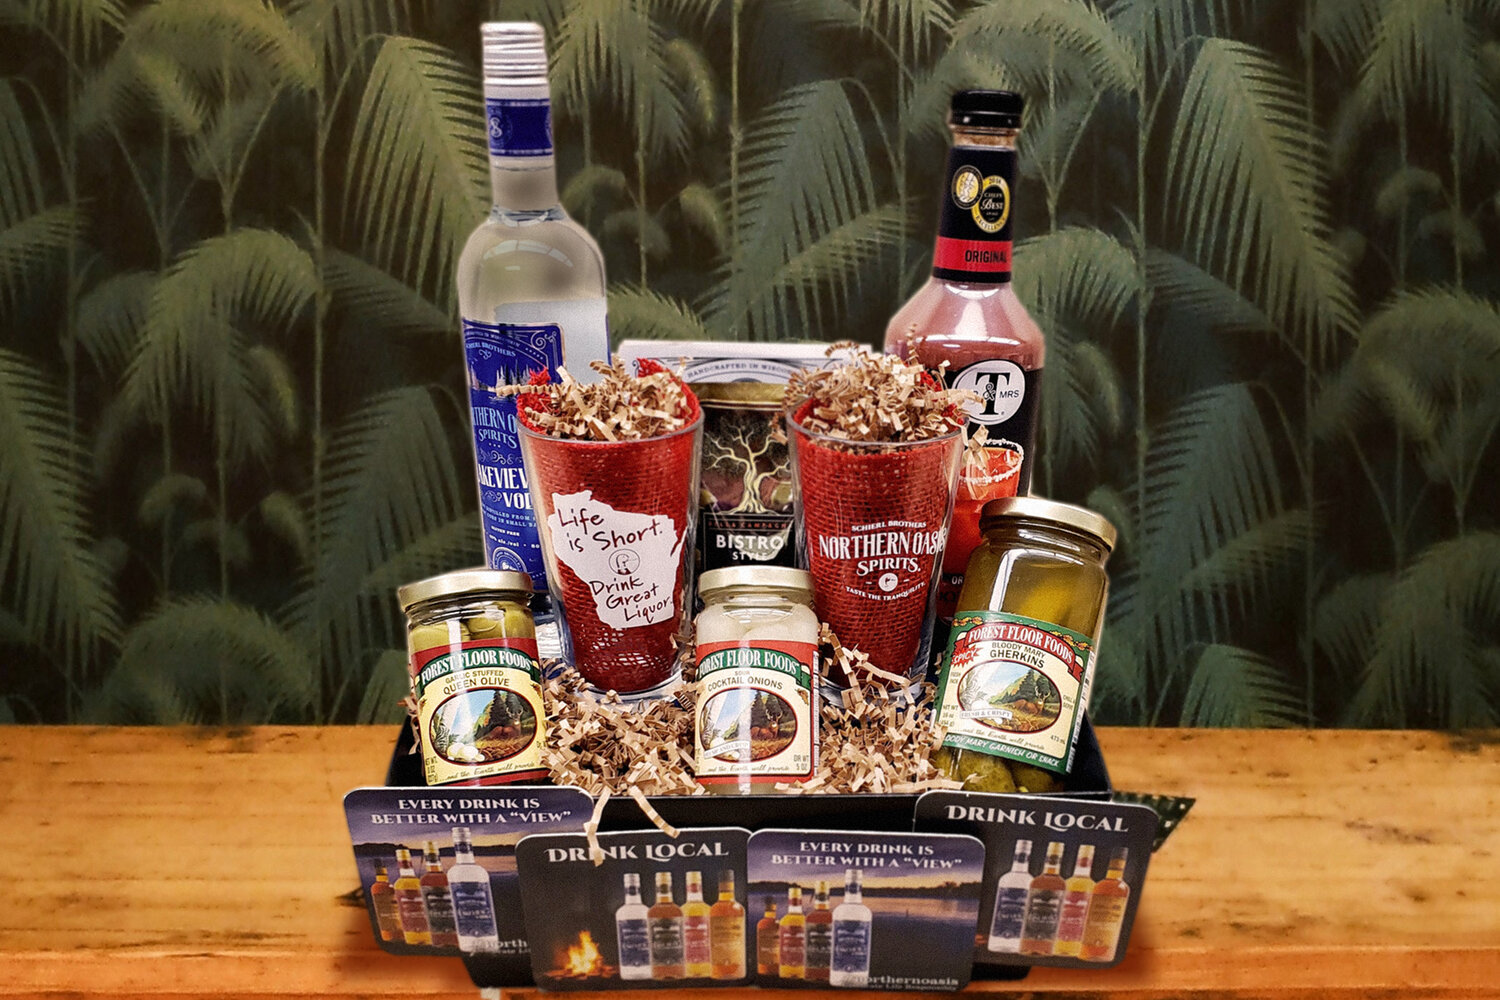 Cocktail Kits for Christmas! — Northern Oasis Spirits